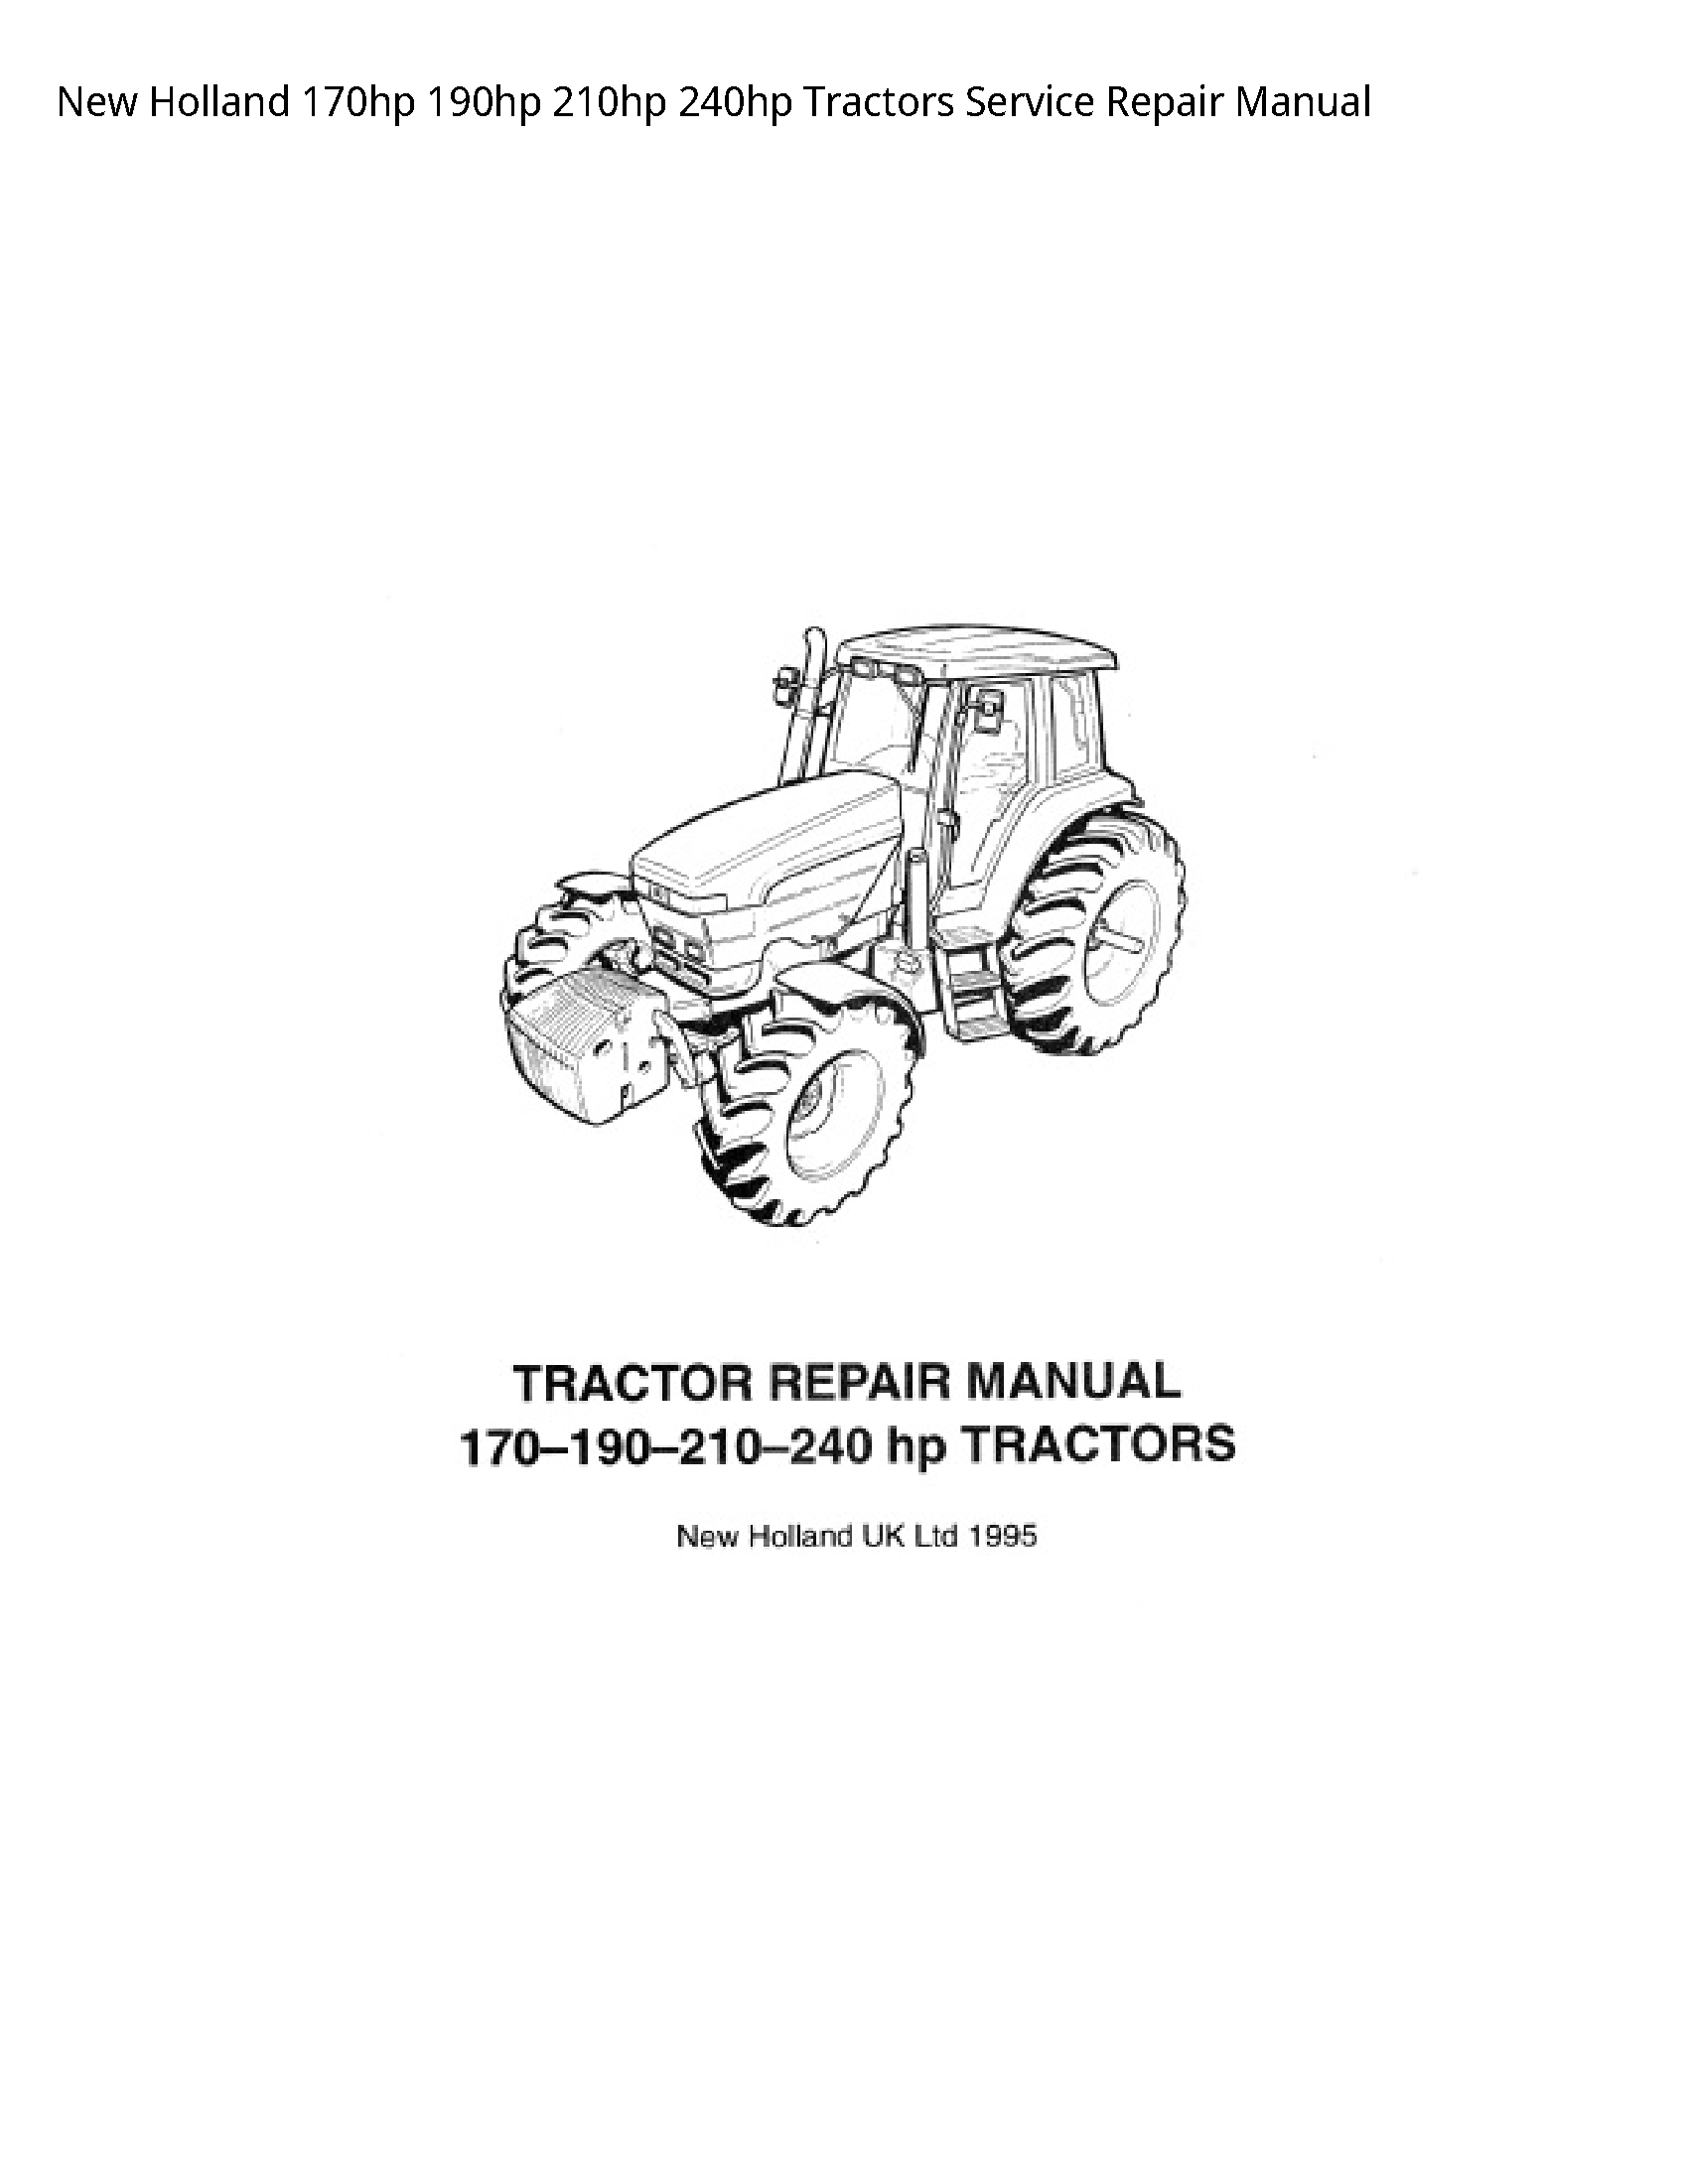 New Holland 170hp Tractors manual